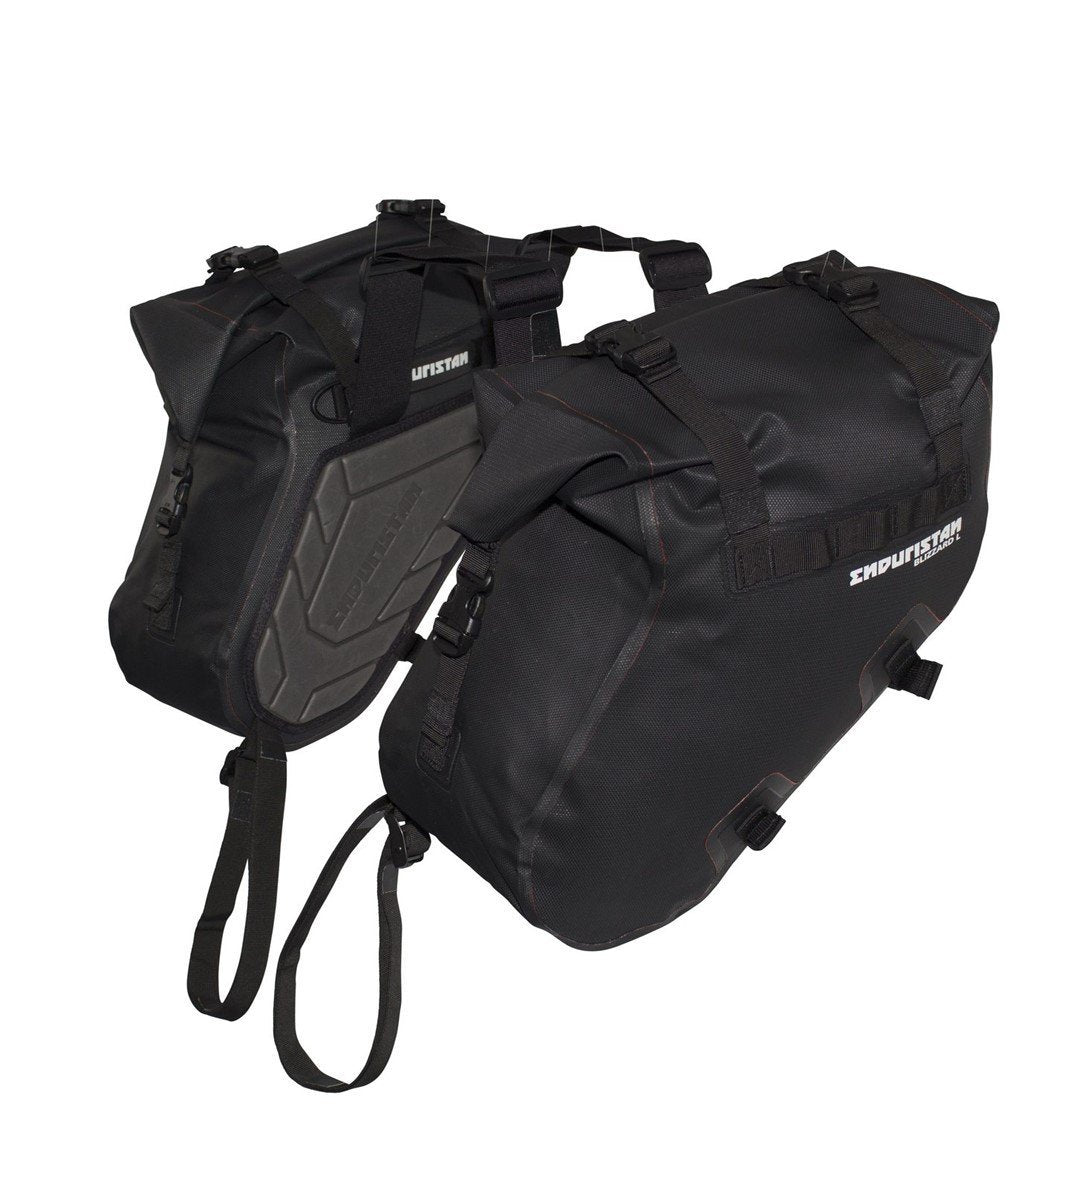 Enduristan Blizzard saddlebags - Perfect fit for an enduro! - Allroadmoto